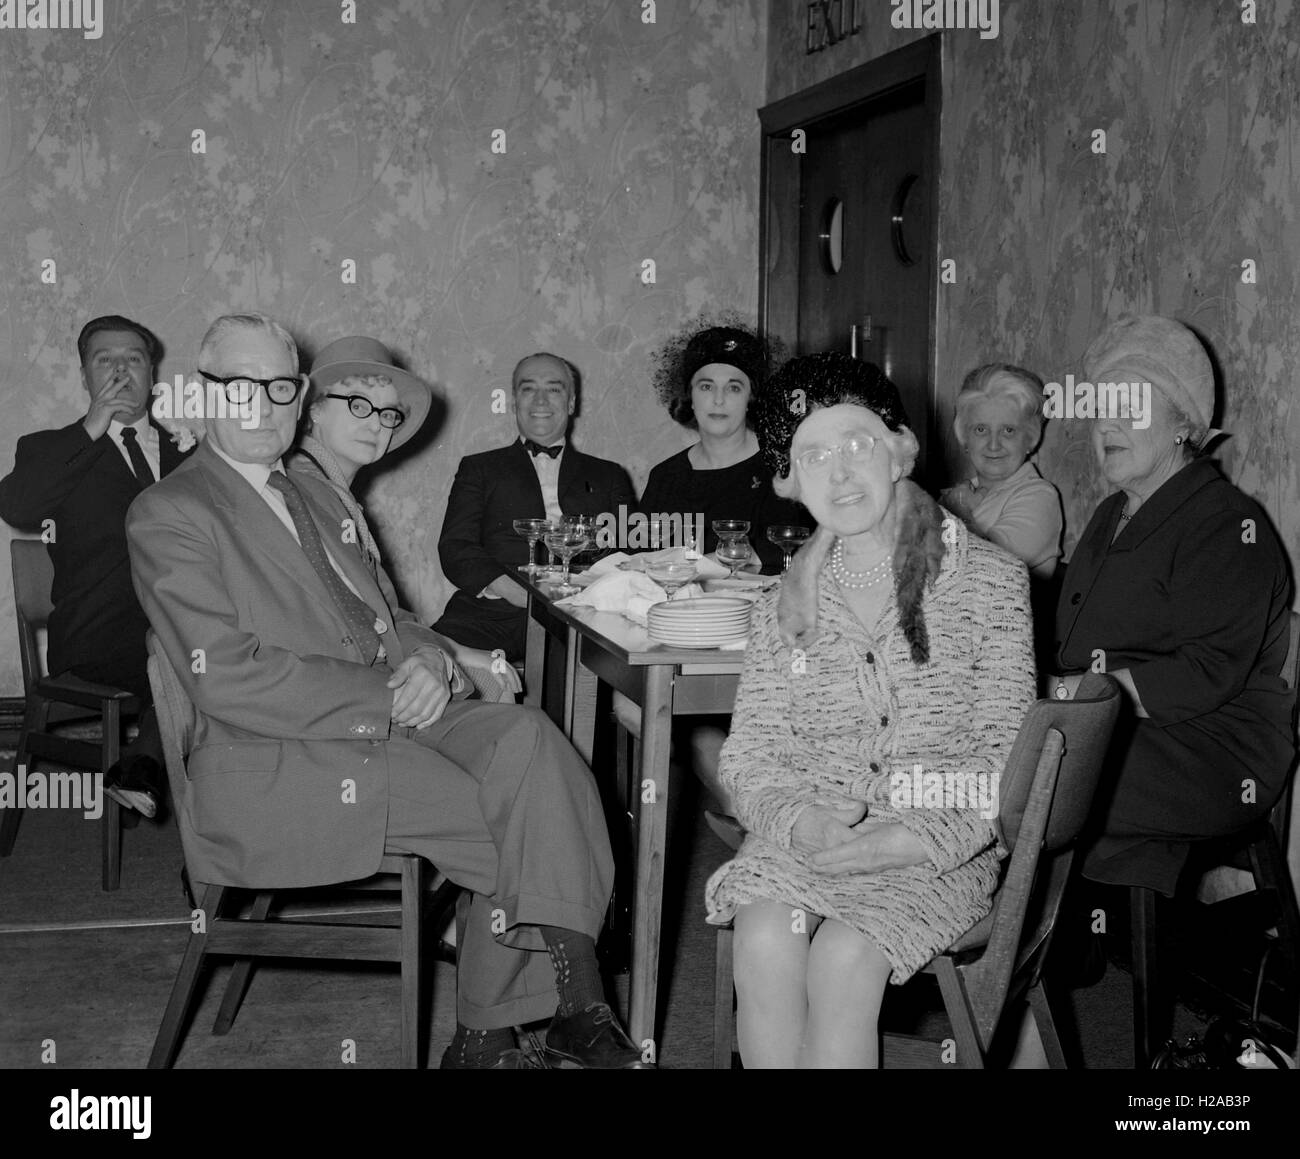 Wedding Day, at the reception. Social history, England c1960. Photo by Tony Henshaw Stock Photo